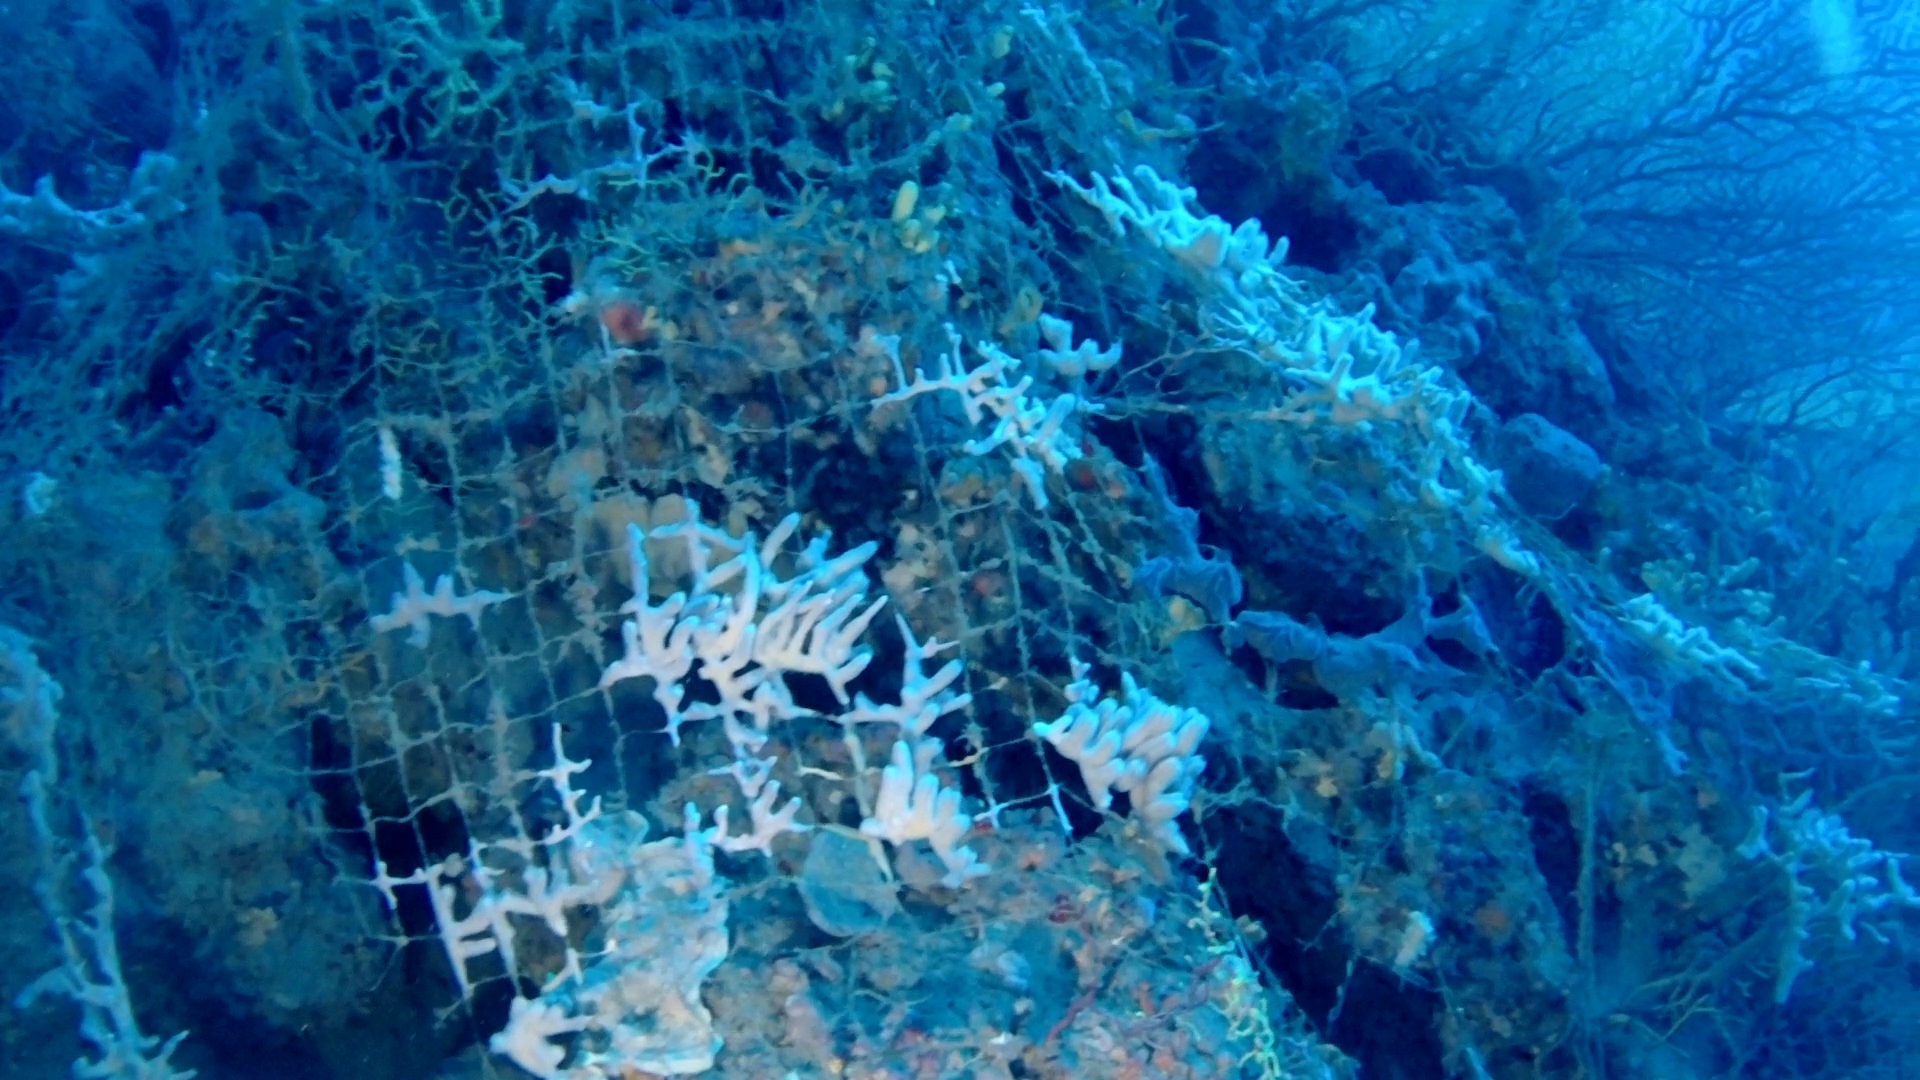 rete da pesca abbandonata colonizzata da spugne – abbandoned fishing net colonized by sponges – intotheblue.it – vlcsnap-2019-01-10-11h18m48s748